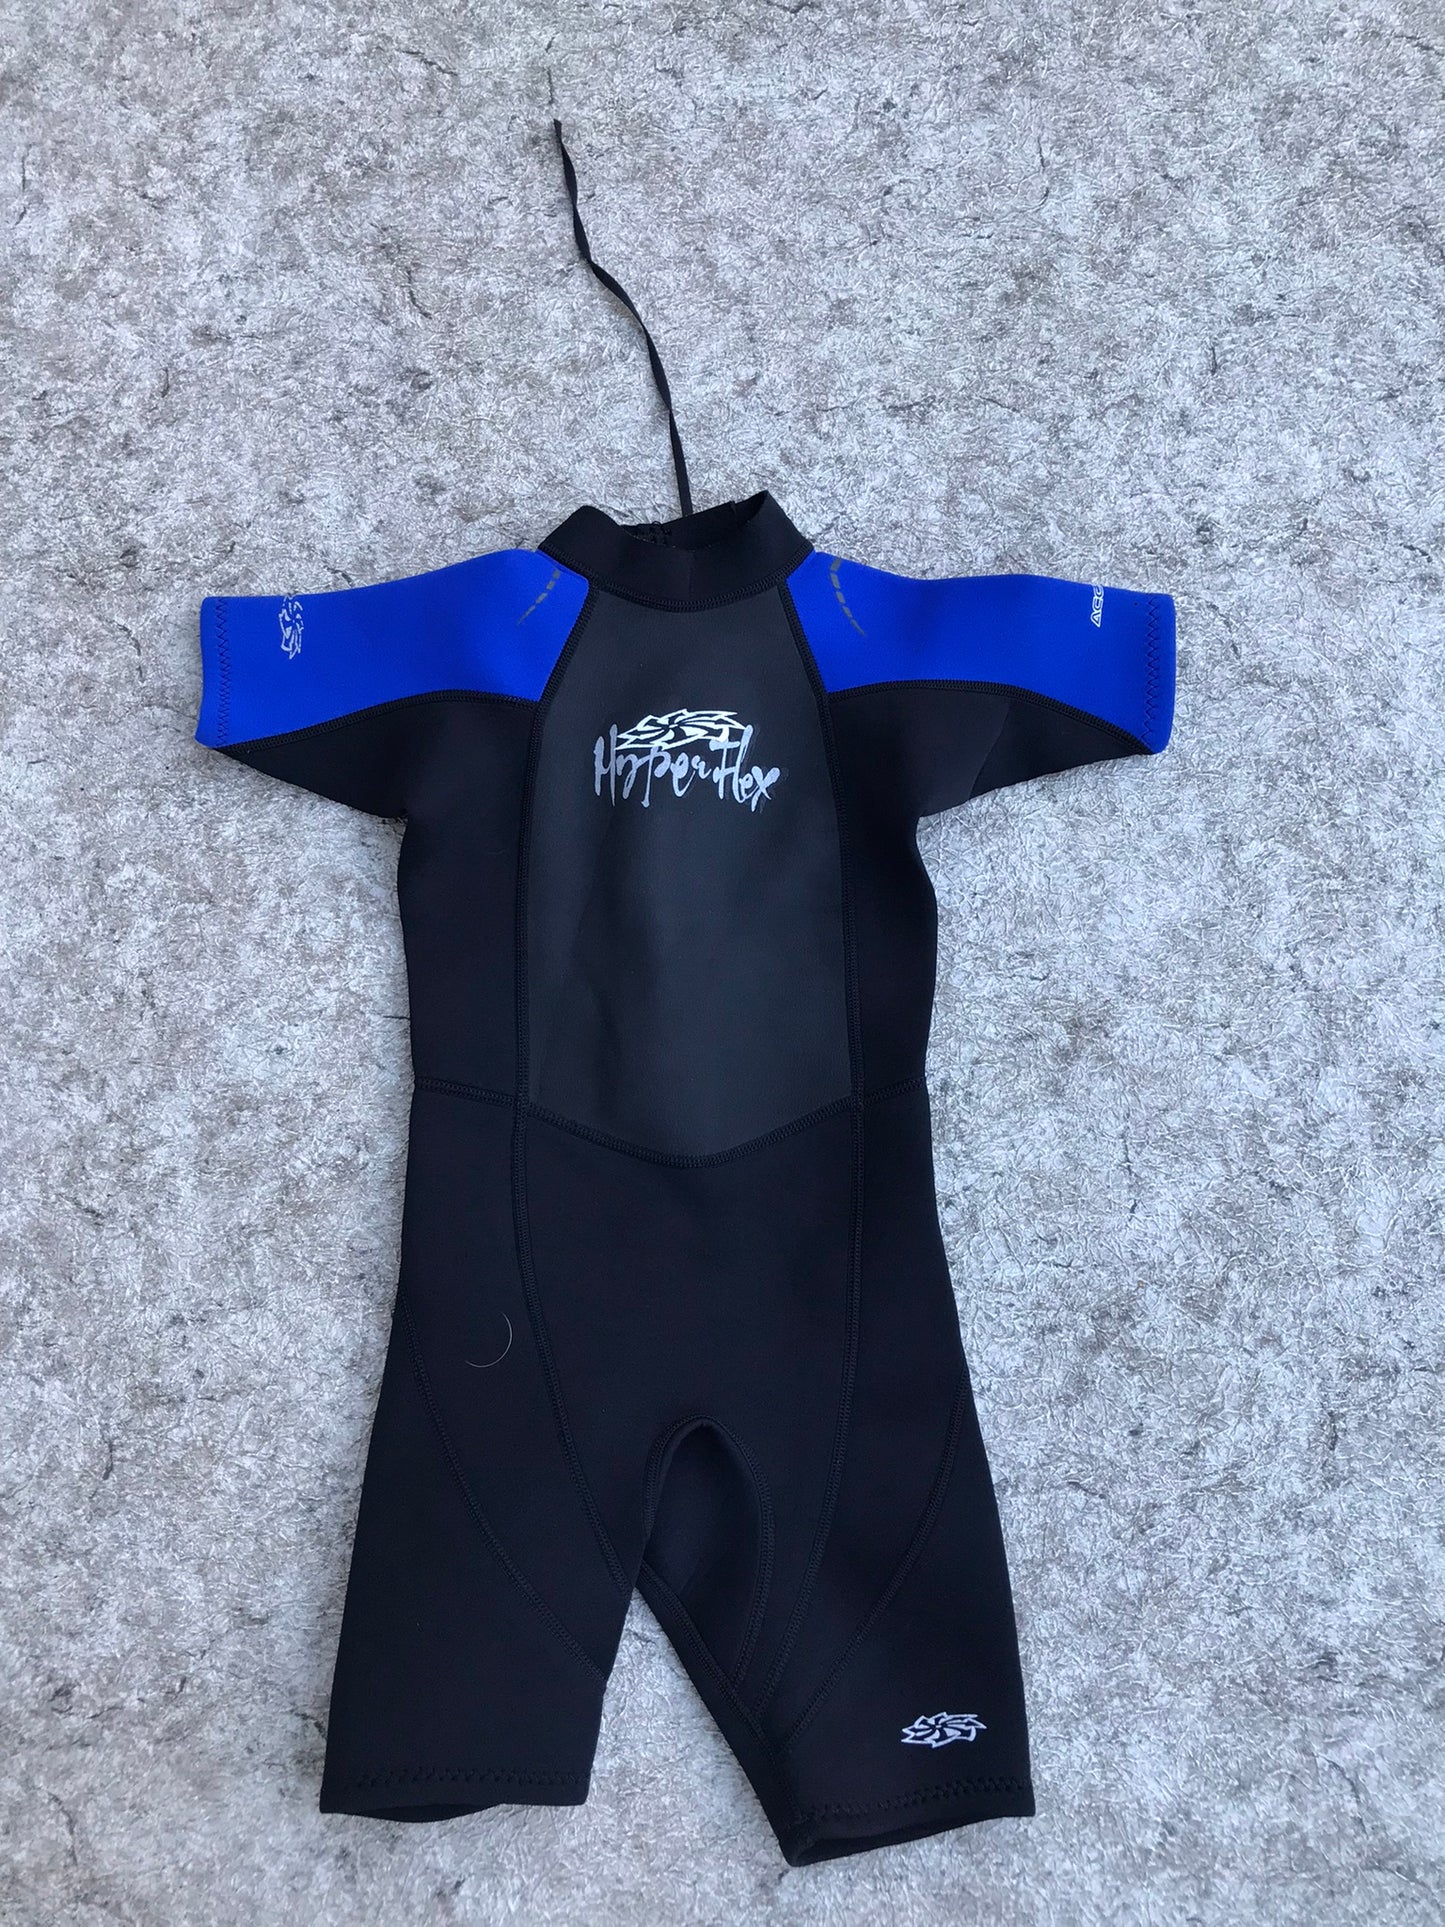 Wetsuit Child Size 6 Hyper Flex Blue Black 2.5 mm  Excellent